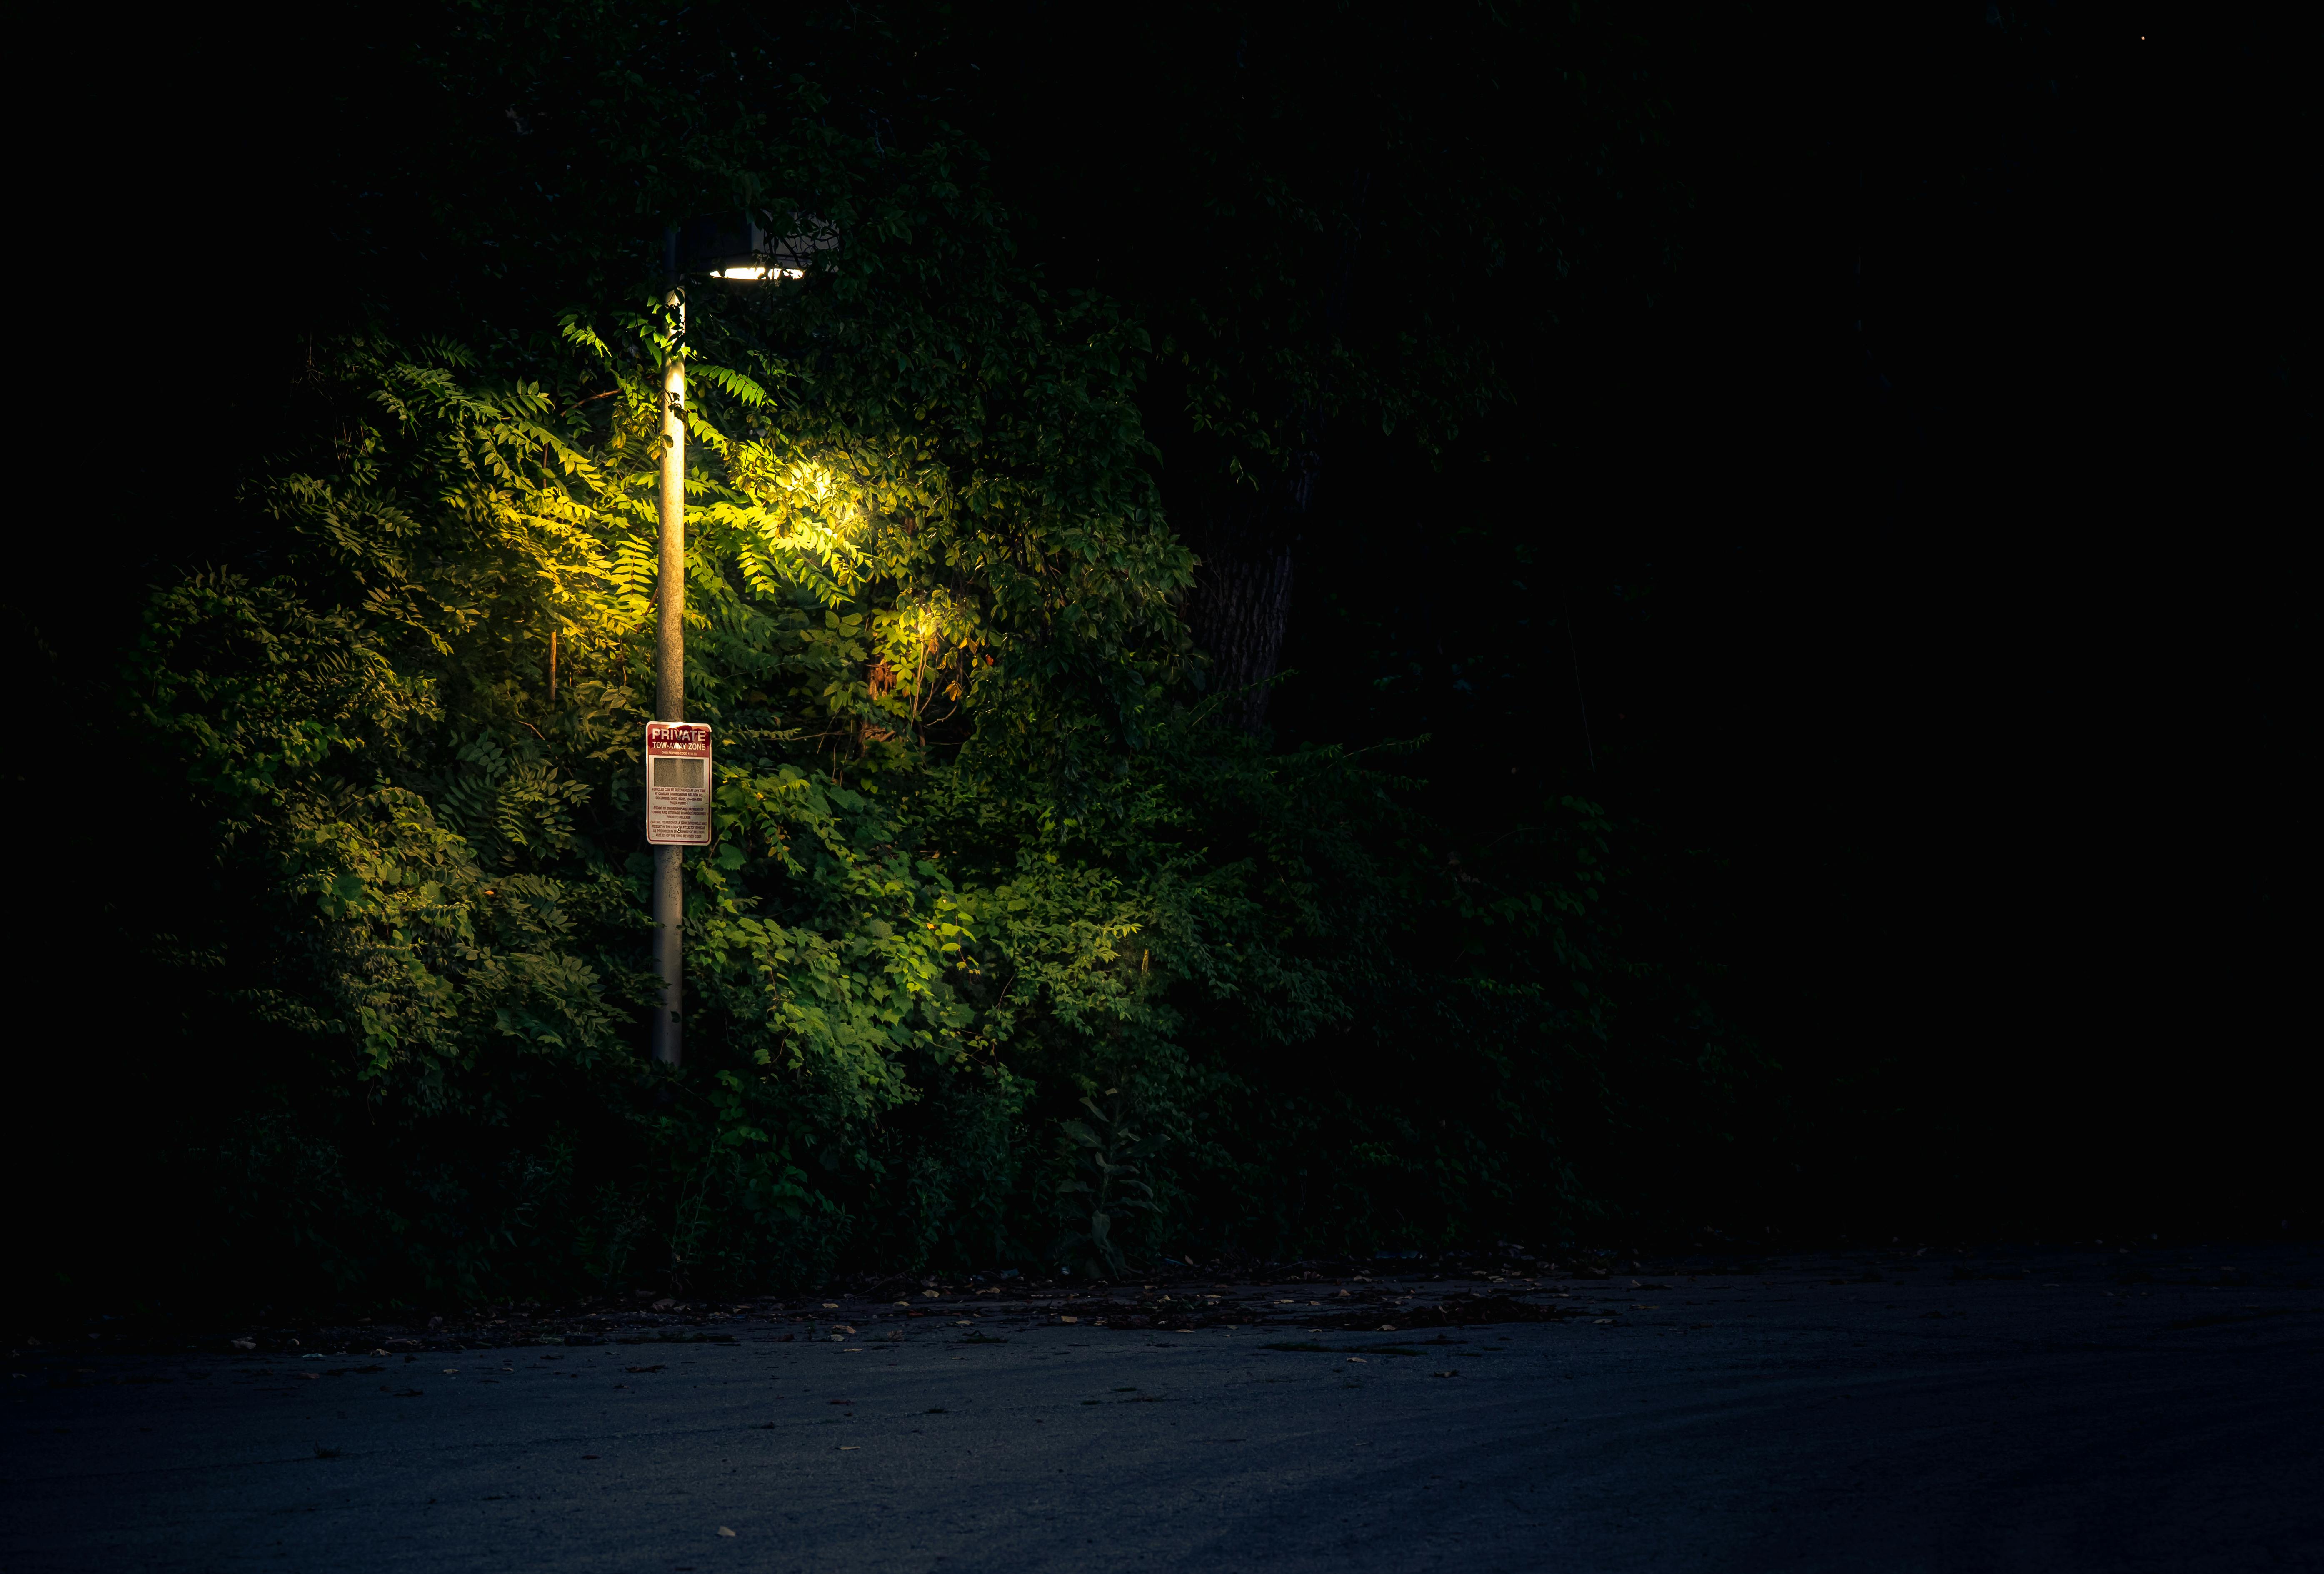 Images Gratuites : lumière, rue, voiture, nuit, pluie, véhicule,  Pare-brise, Feu, obscurité, éclairage, 2016, 366, Arrêté dans le trafic,  capture d'écran 3841x2290 - - 283086 - Banque d image gratuite - PxHere